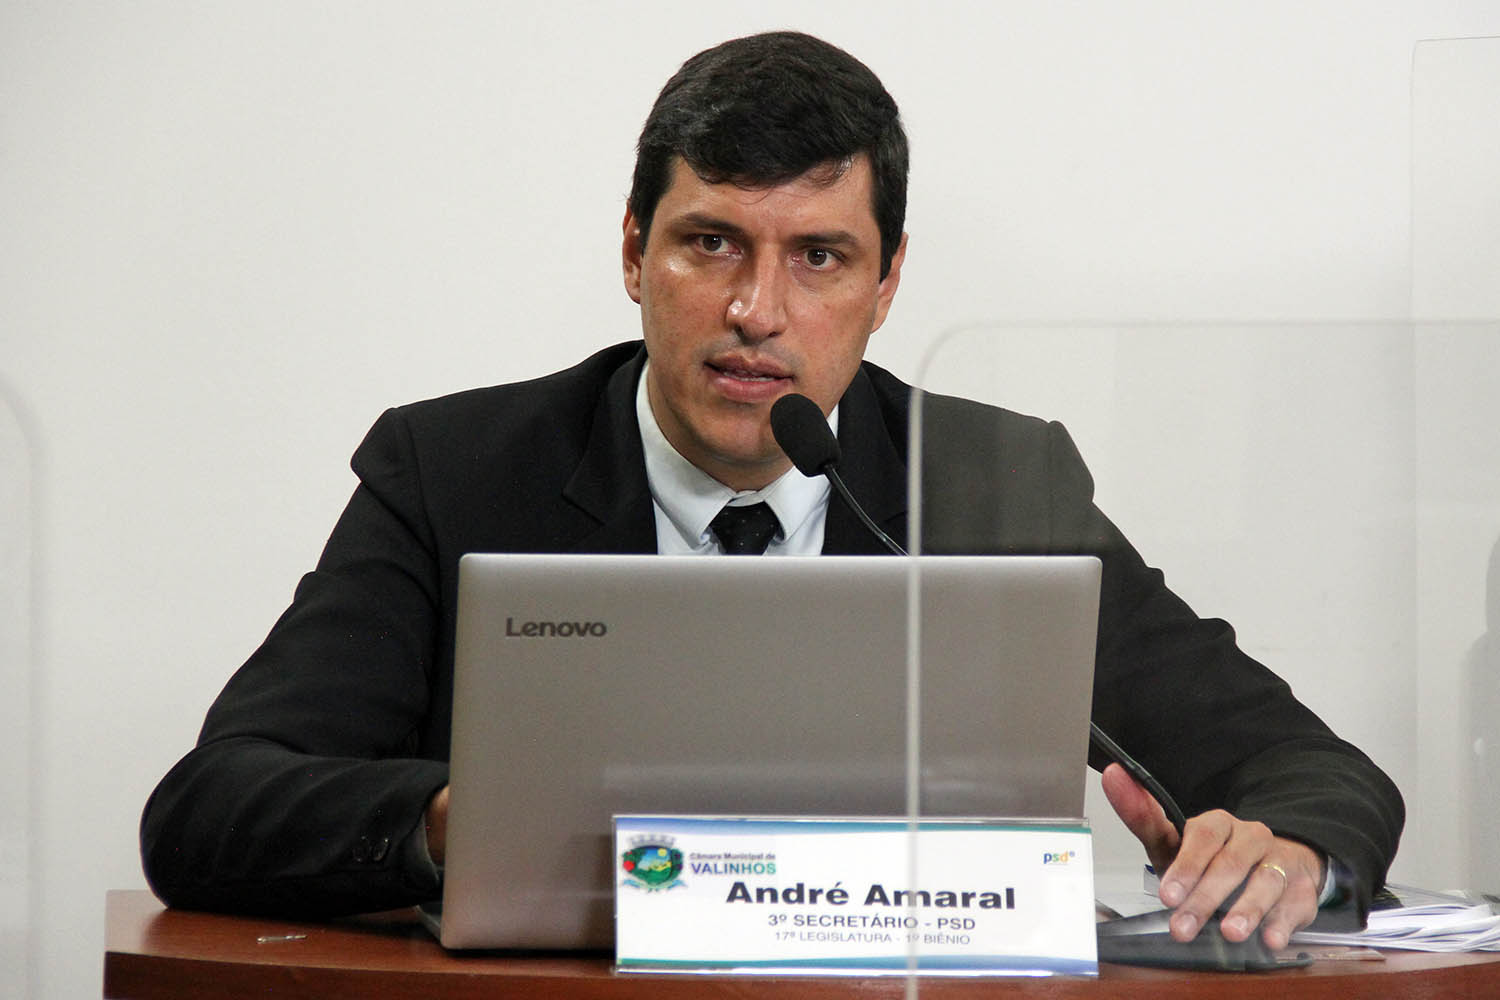 #PraCegoVer: Foto mostra o vereador André Amaral discursando durante a sessão ordinária. Em sua mesa, há um notebook aberto.